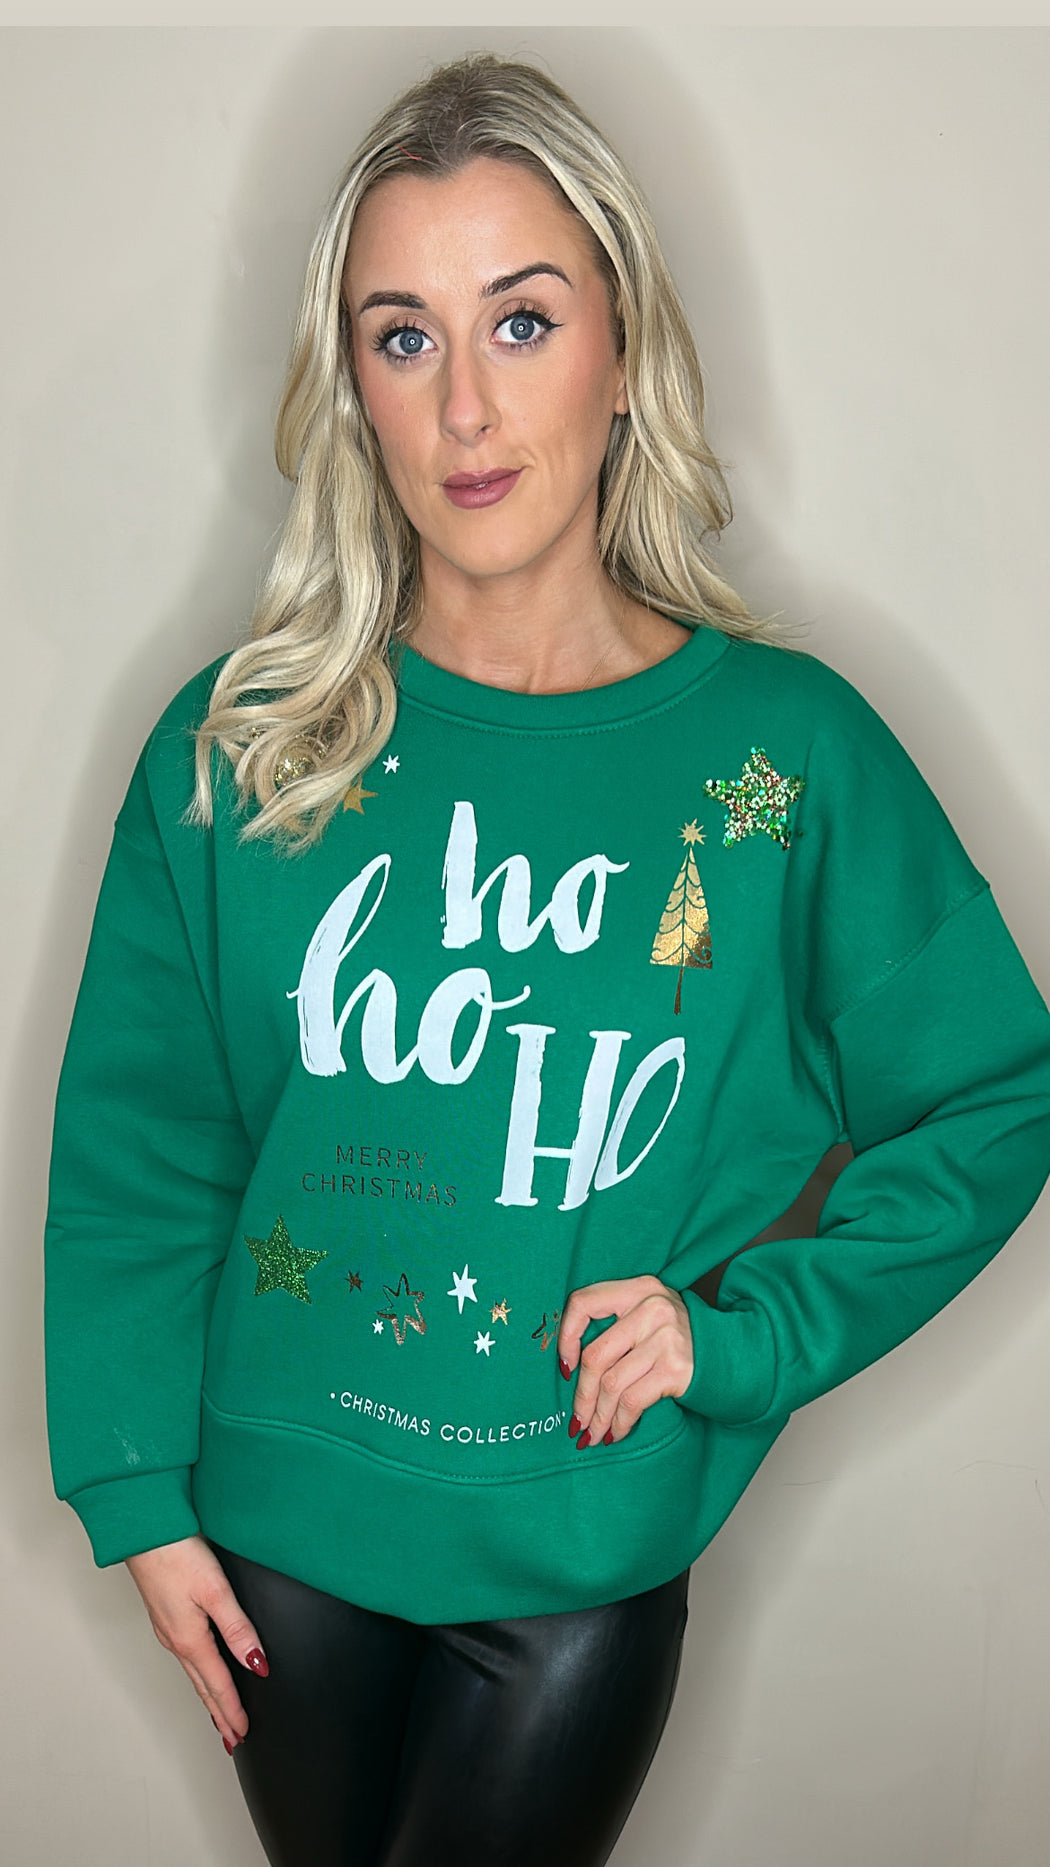 Green Ho Ho Ho Christmas sweater